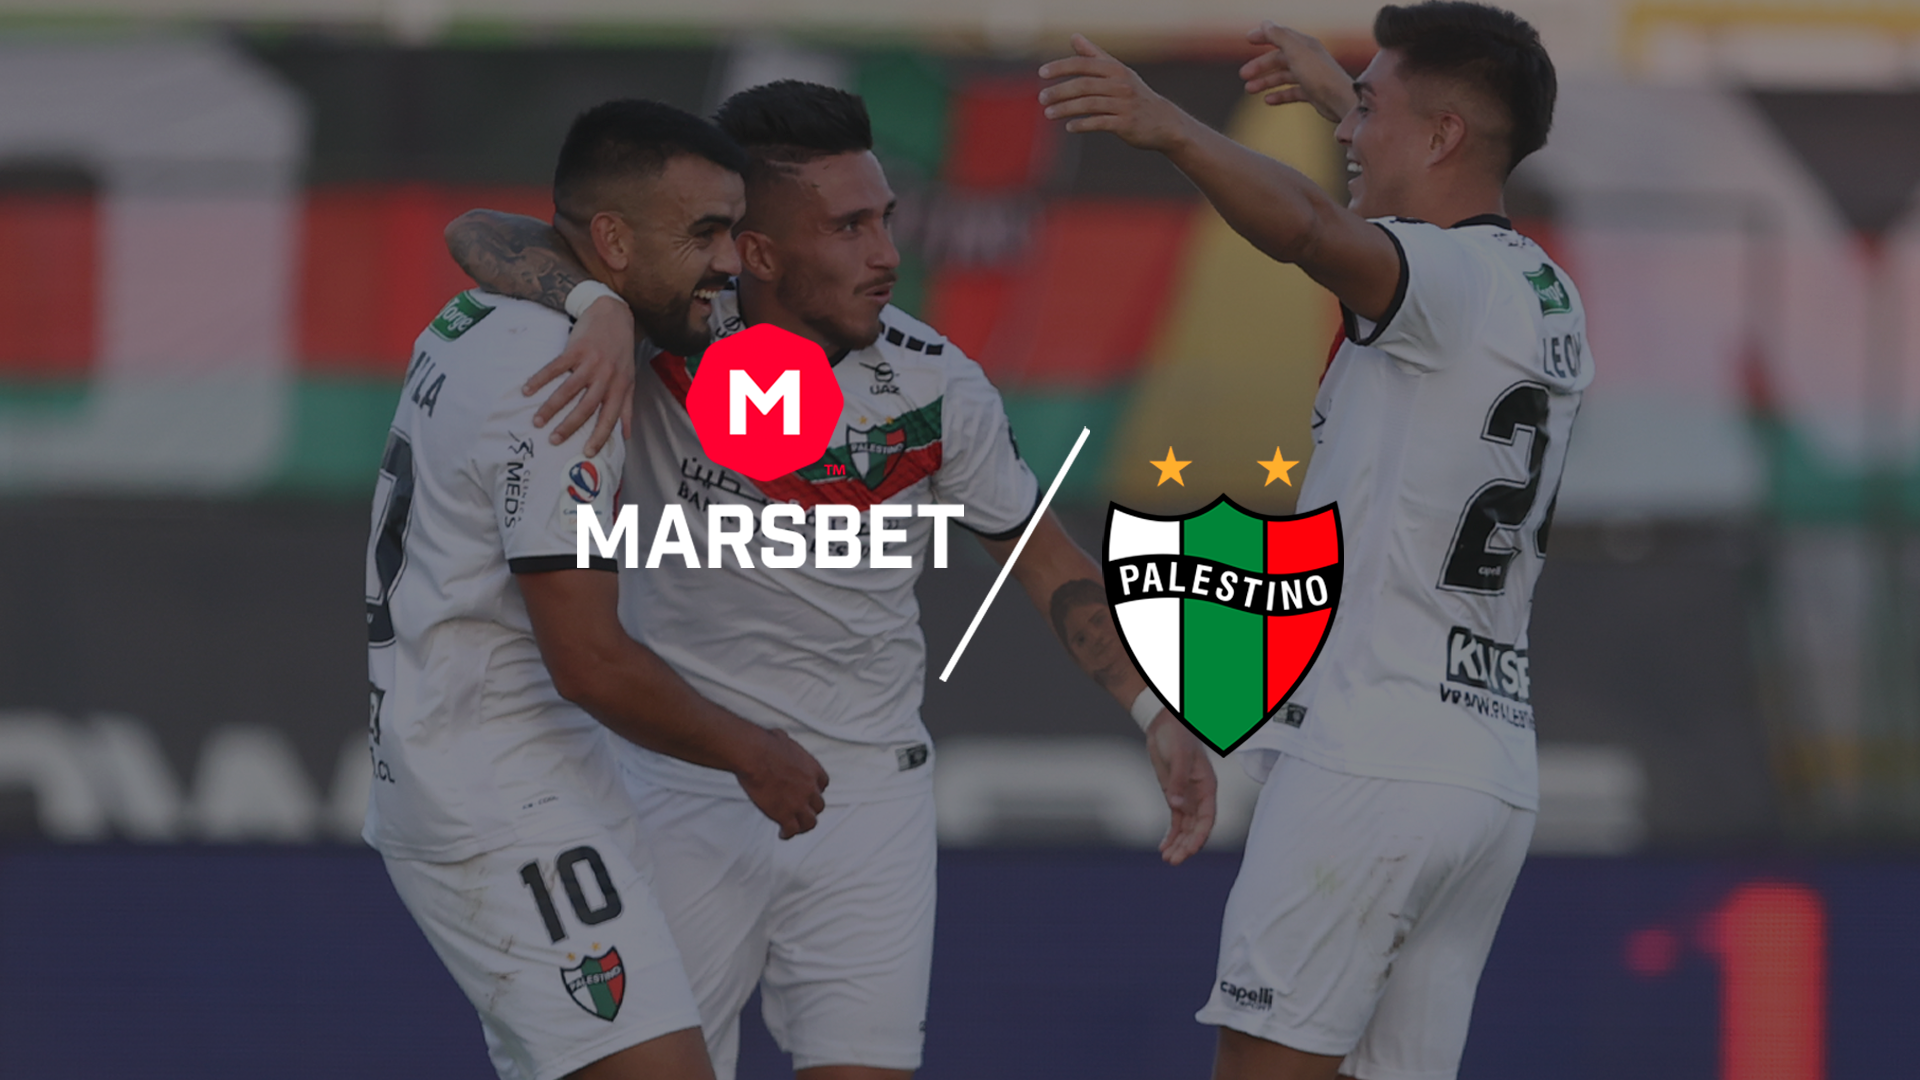 Marsbet es nuevo sponsor de Palestino